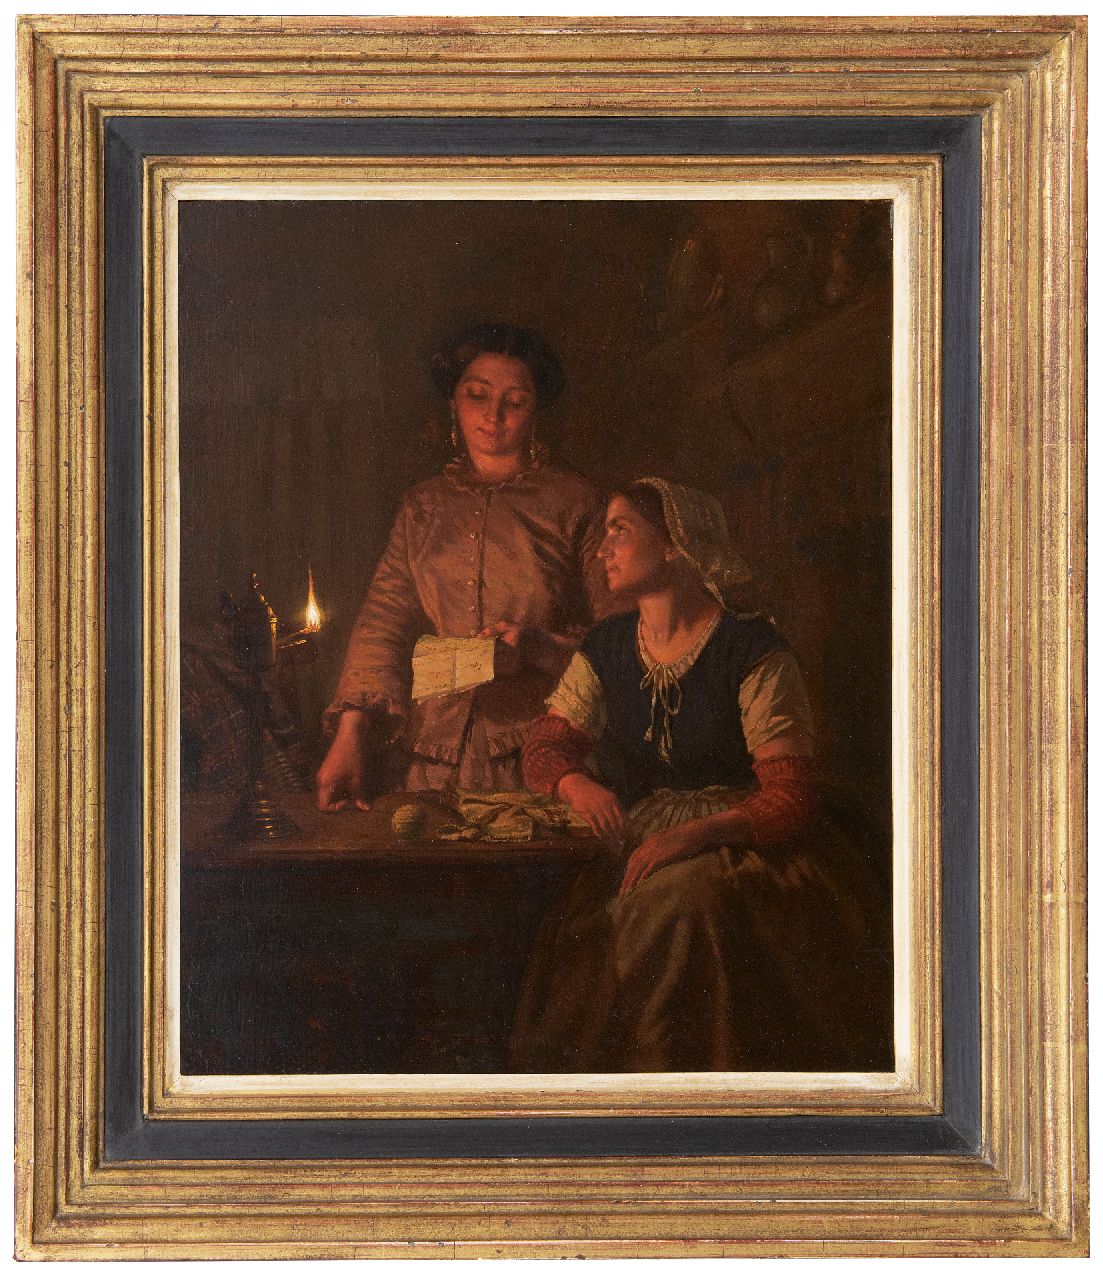 Sebes P.W.  | Pieter Willem Sebes | Schilderijen te koop aangeboden | Een belangrijke brief, olieverf op paneel 46,4 x 39,1 cm, gesigneerd linksonder en gedateerd 1858